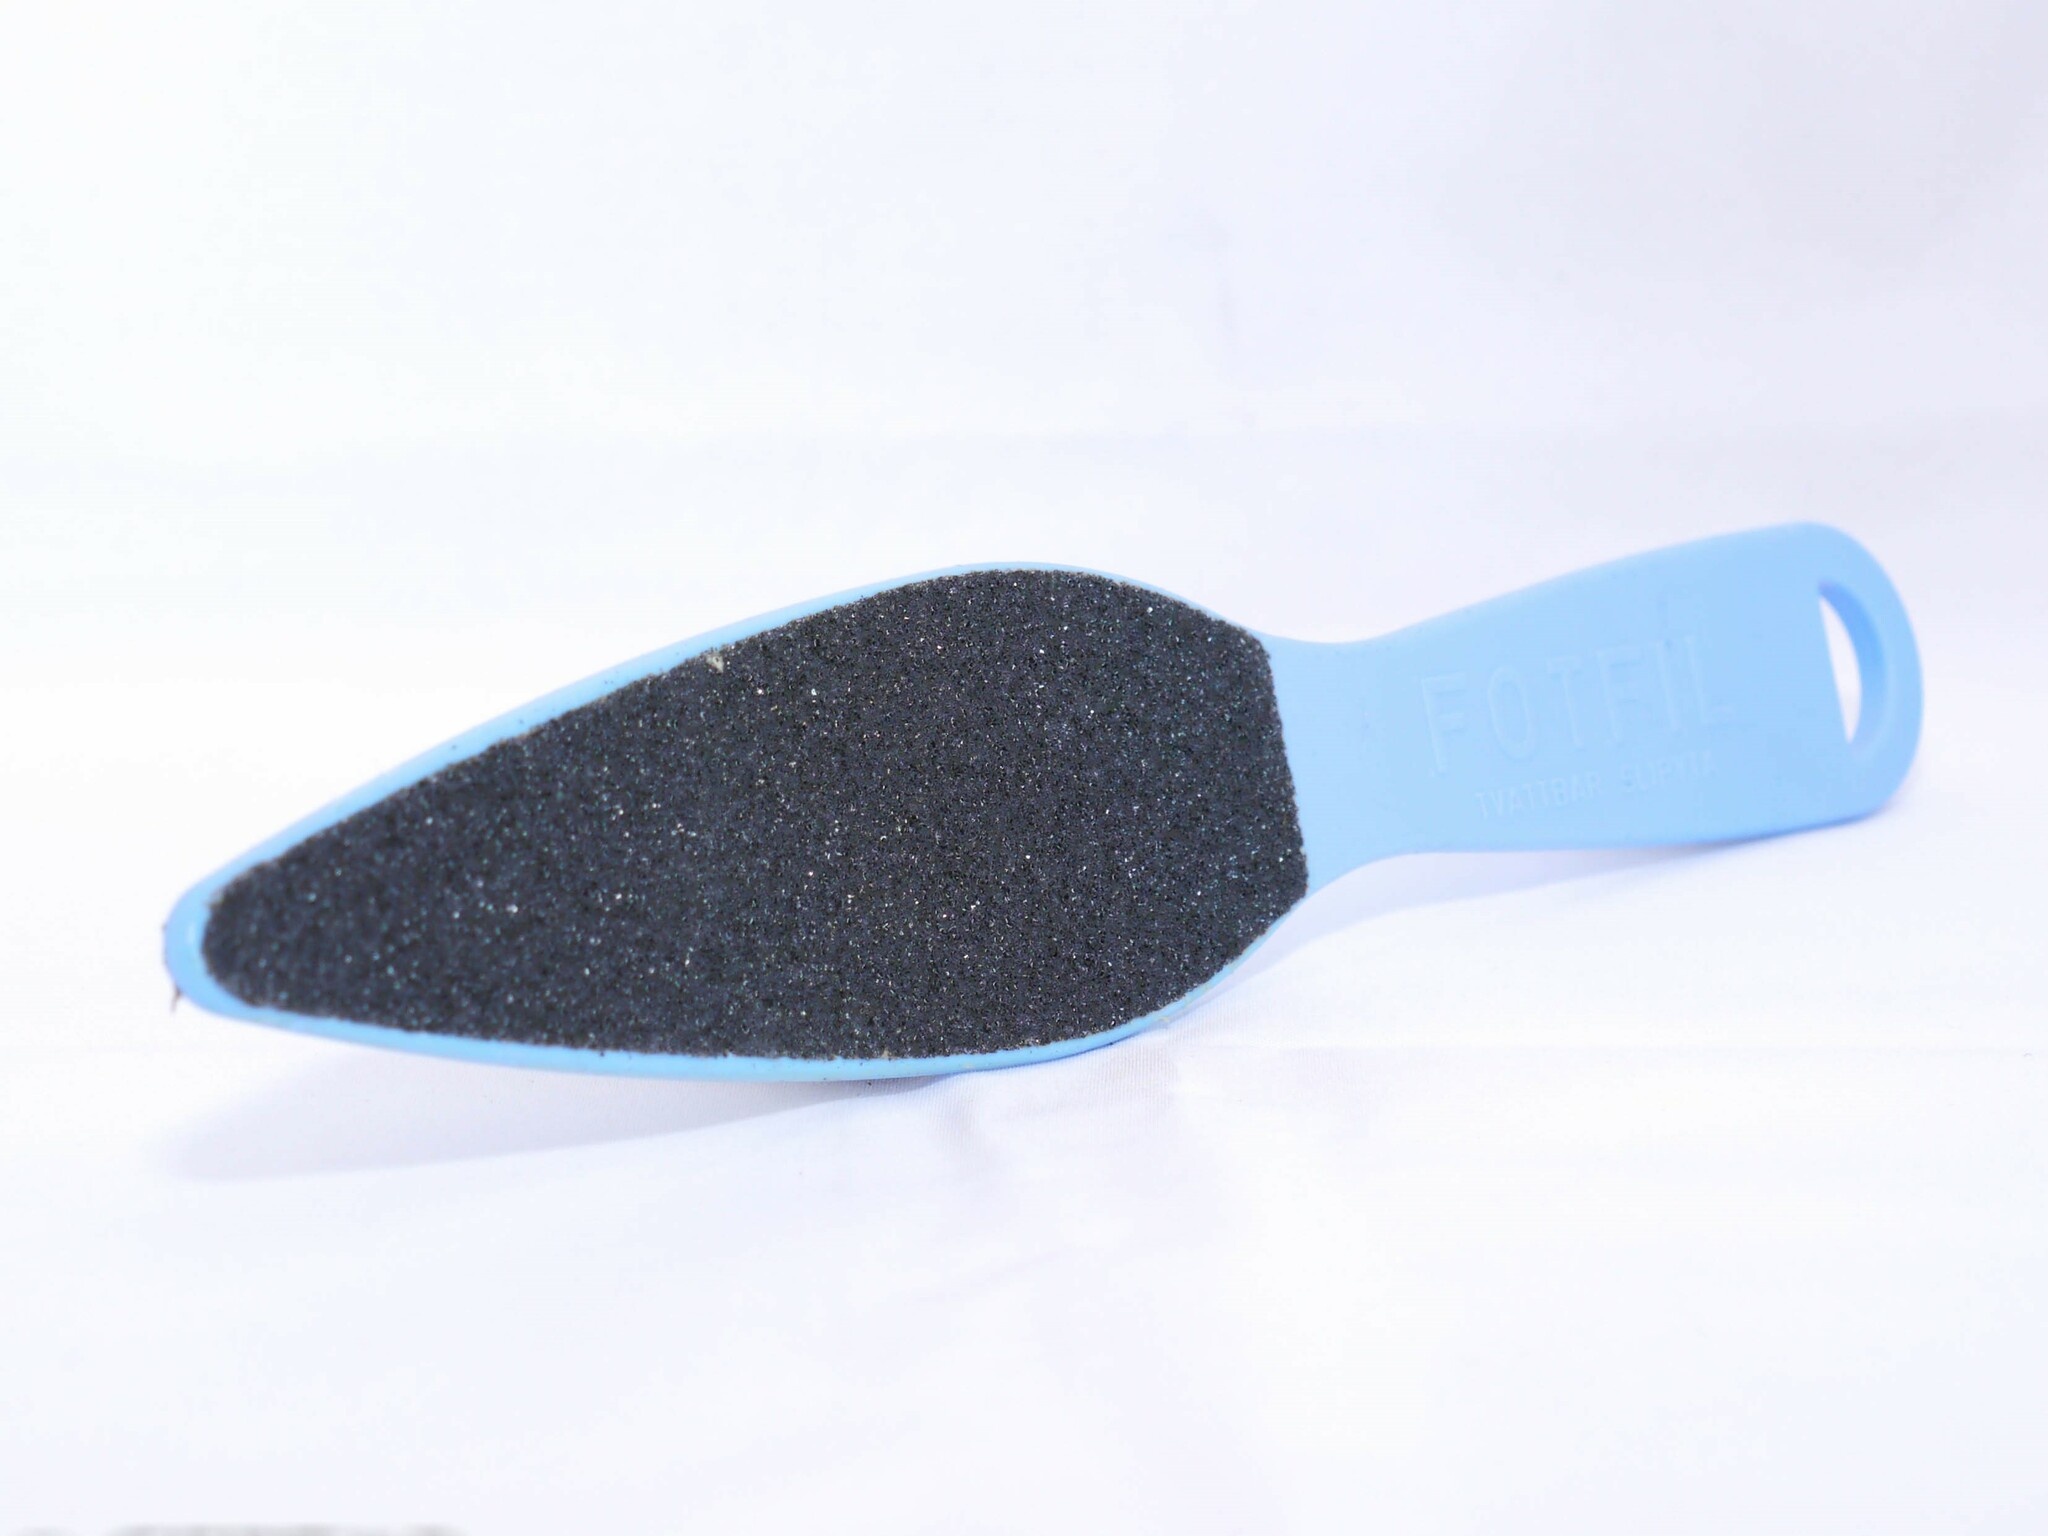 Fotfil blå plast - Blå plast, dubbelsidig, 25 cm. Grov / fin